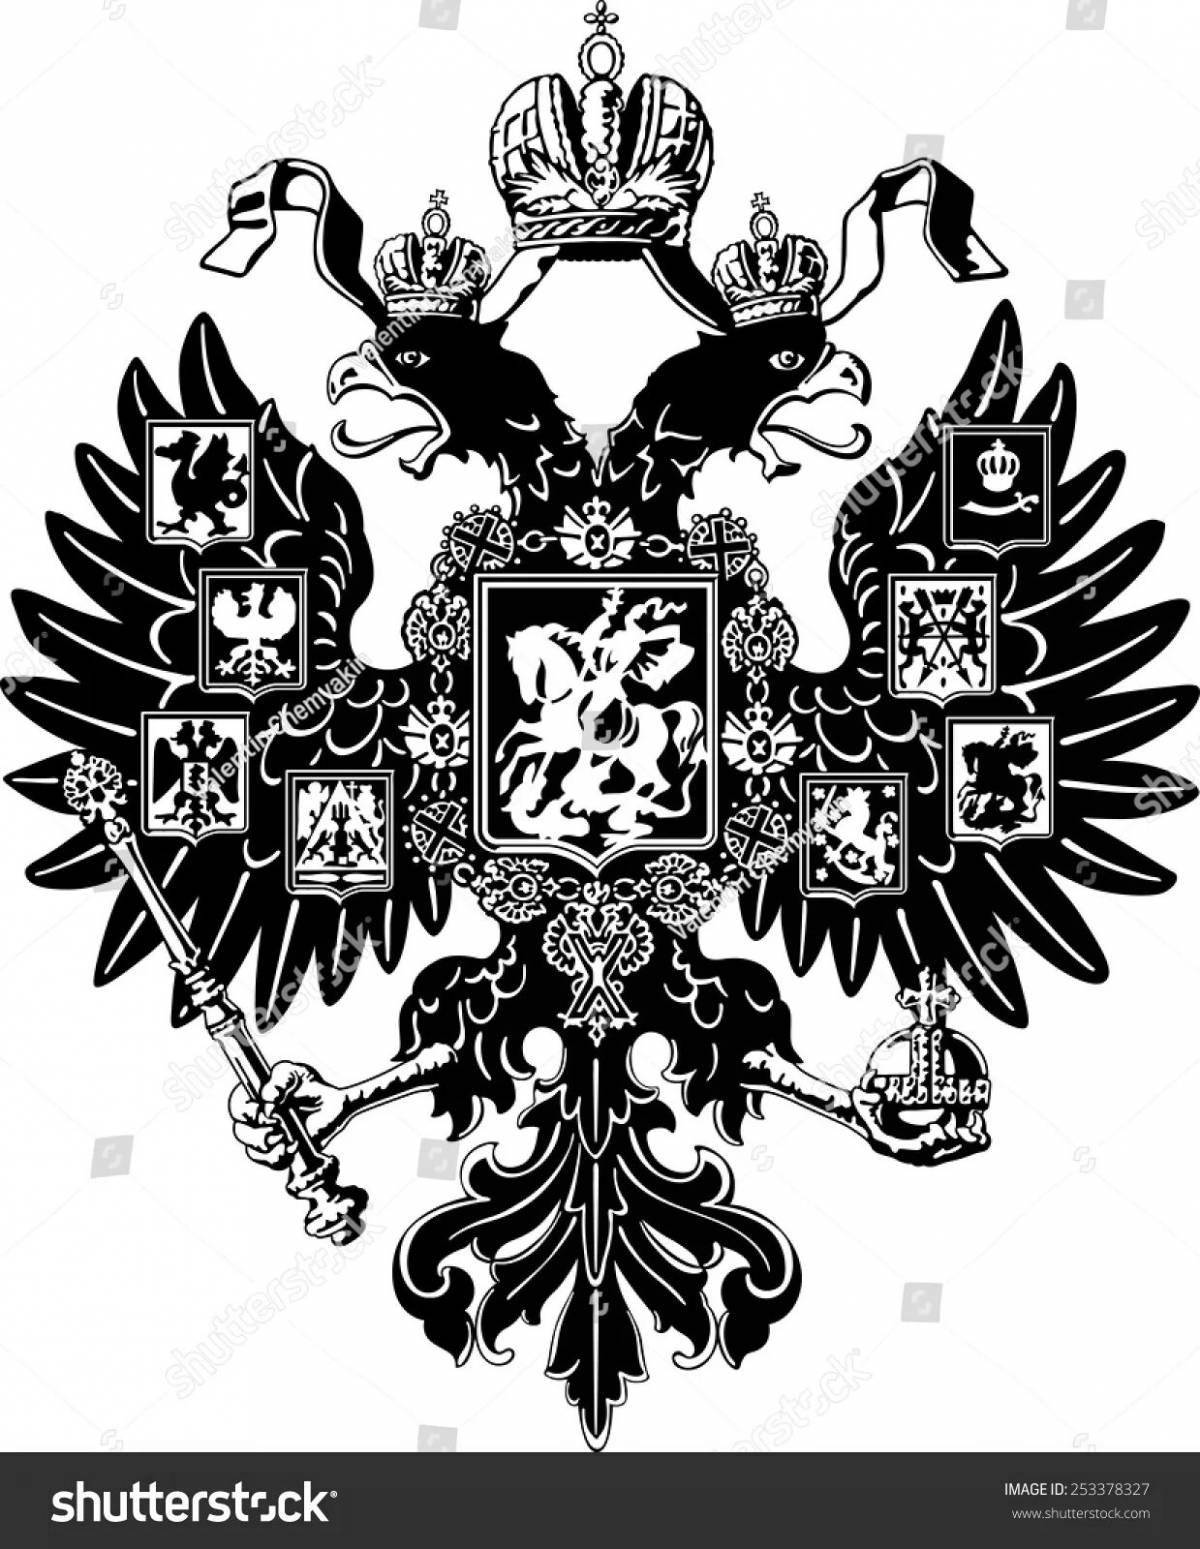 Великолепная раскраска российской империи